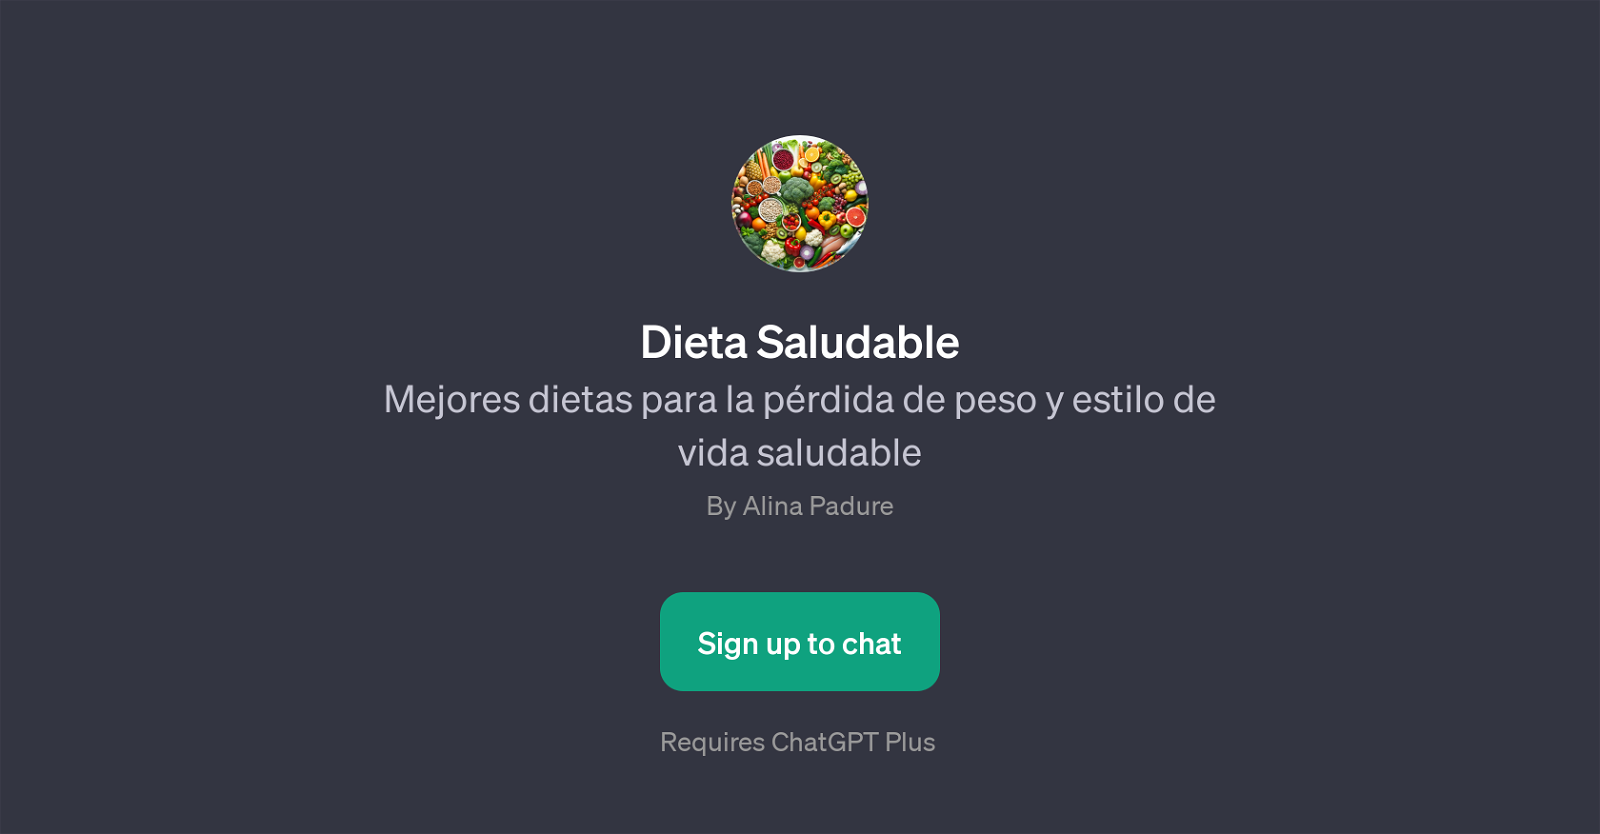 Dieta Saludable website